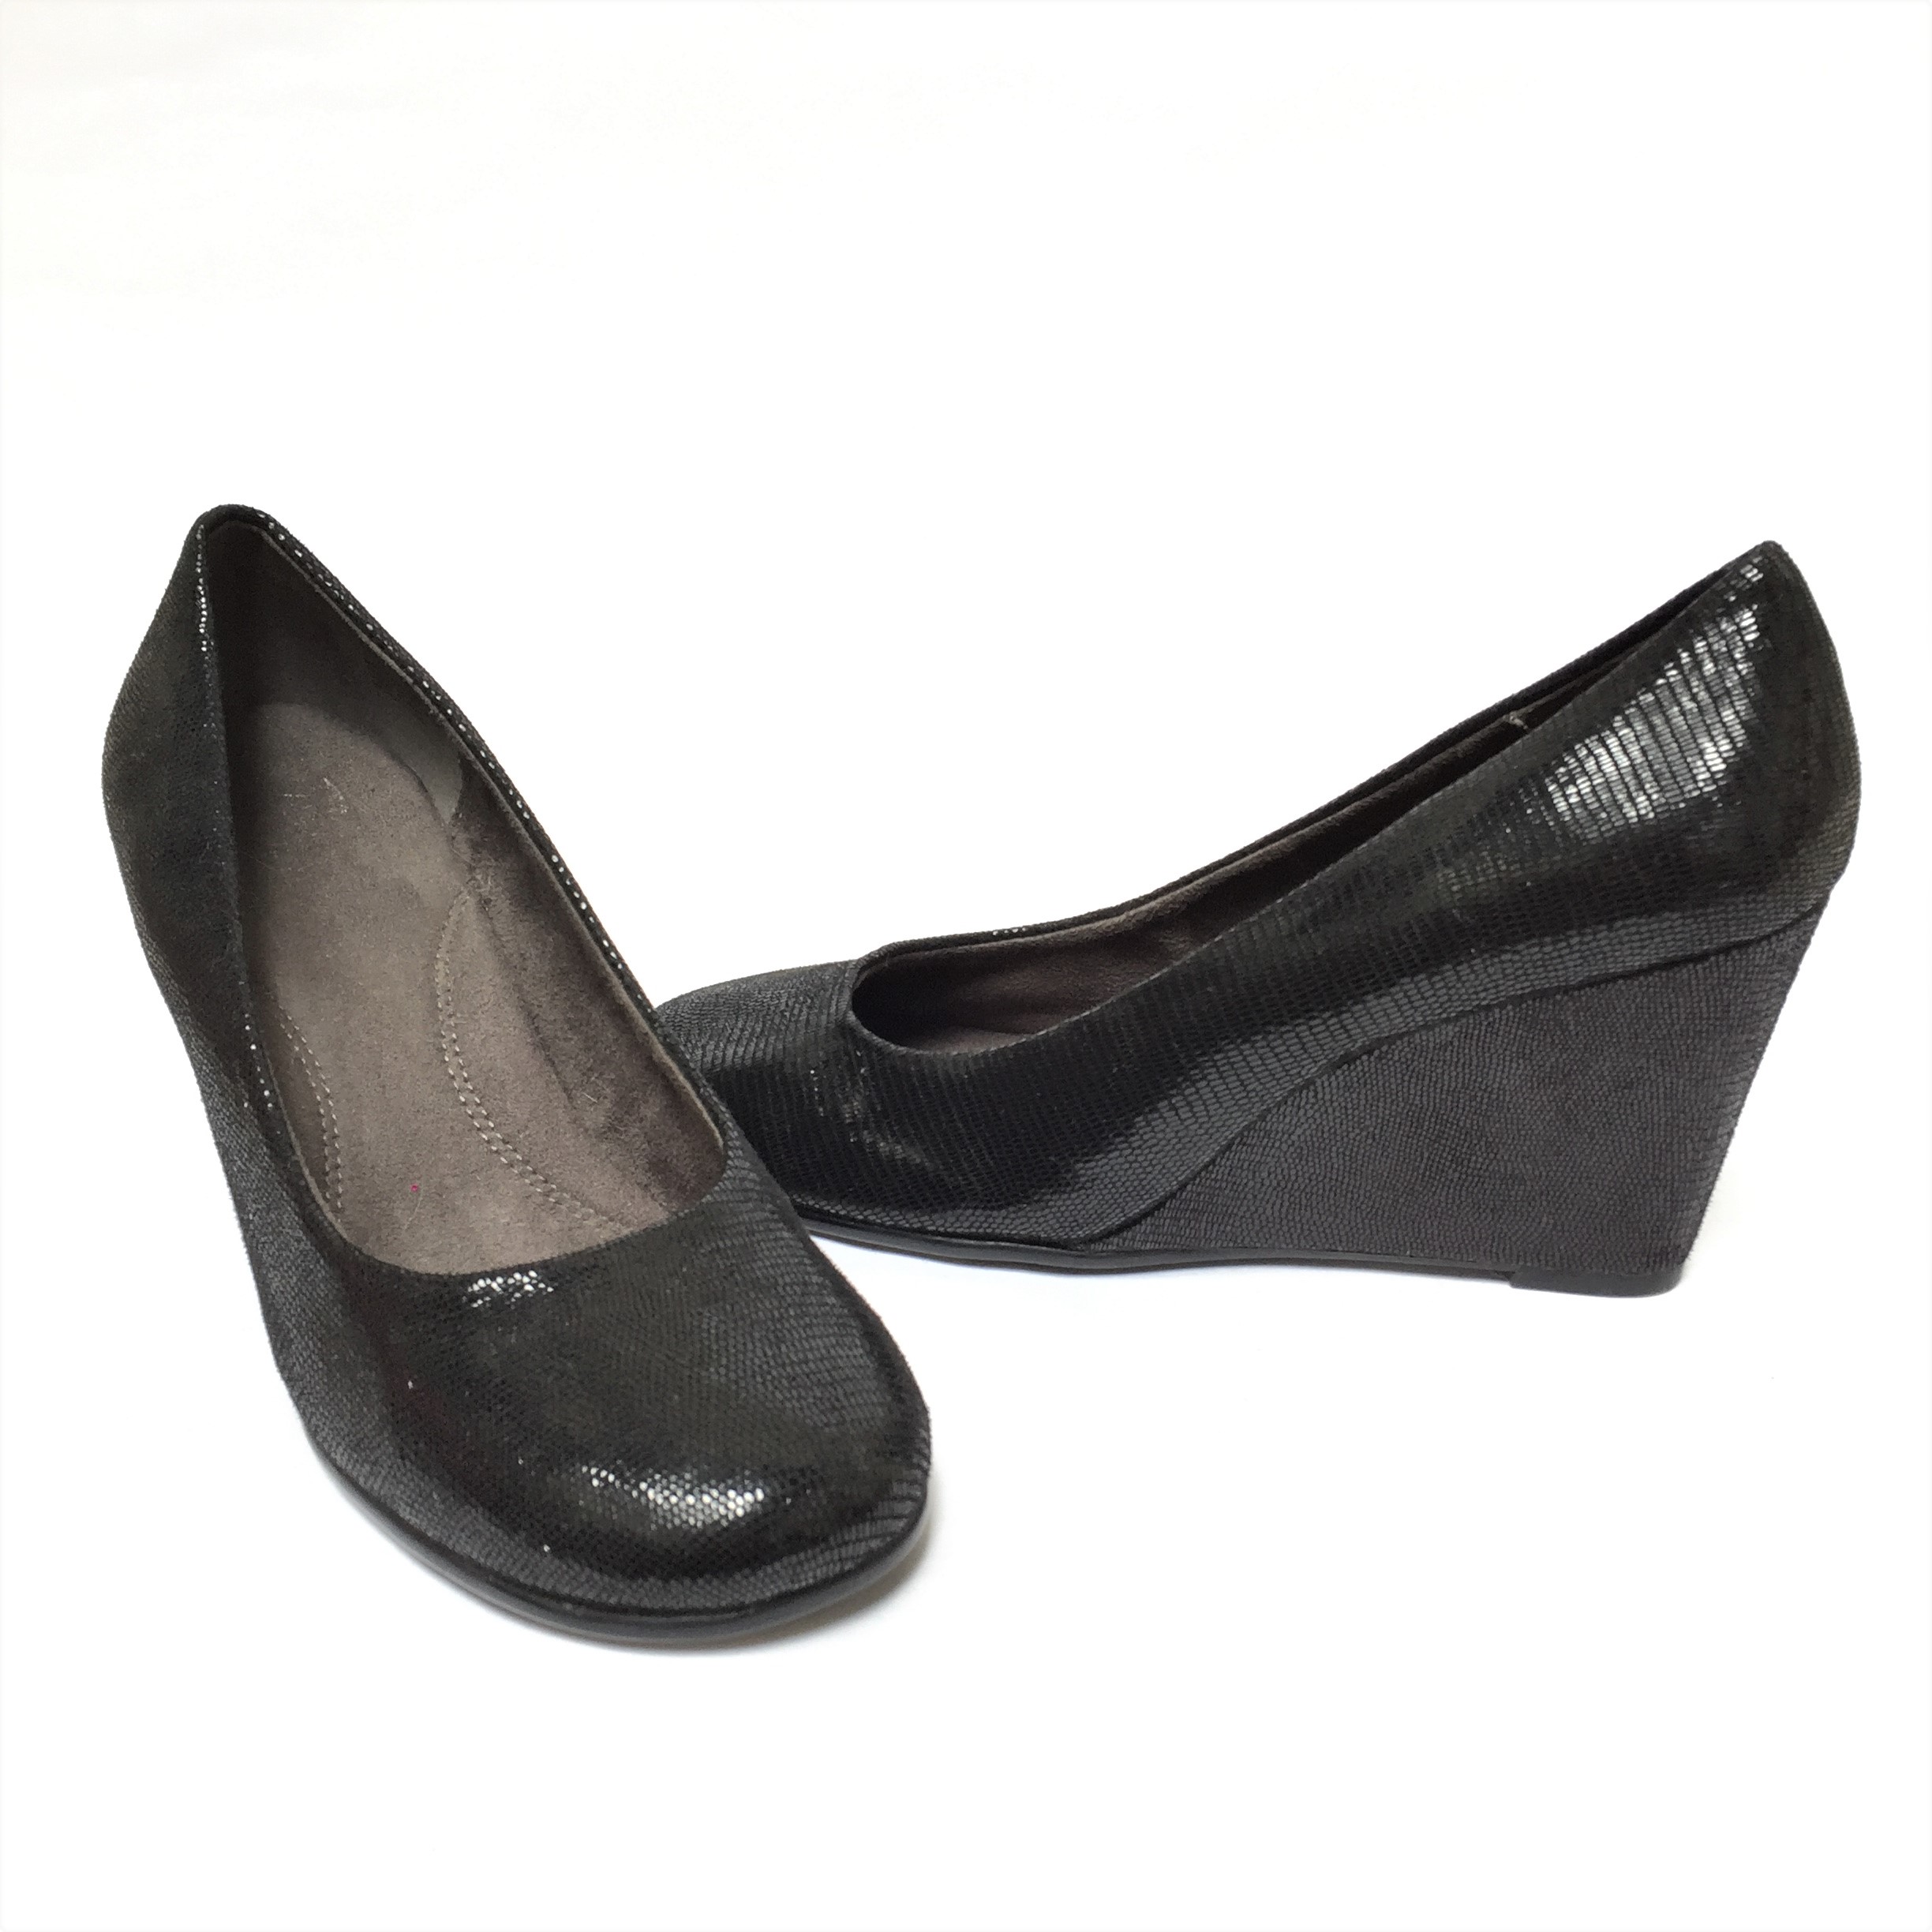 Zapatos Aerosoles negros con textura pitón satinado, punta redonda, taco cuña 7. Muy cómodos! 
Estado 9.5/10
Precio original: $80
Talla 40 